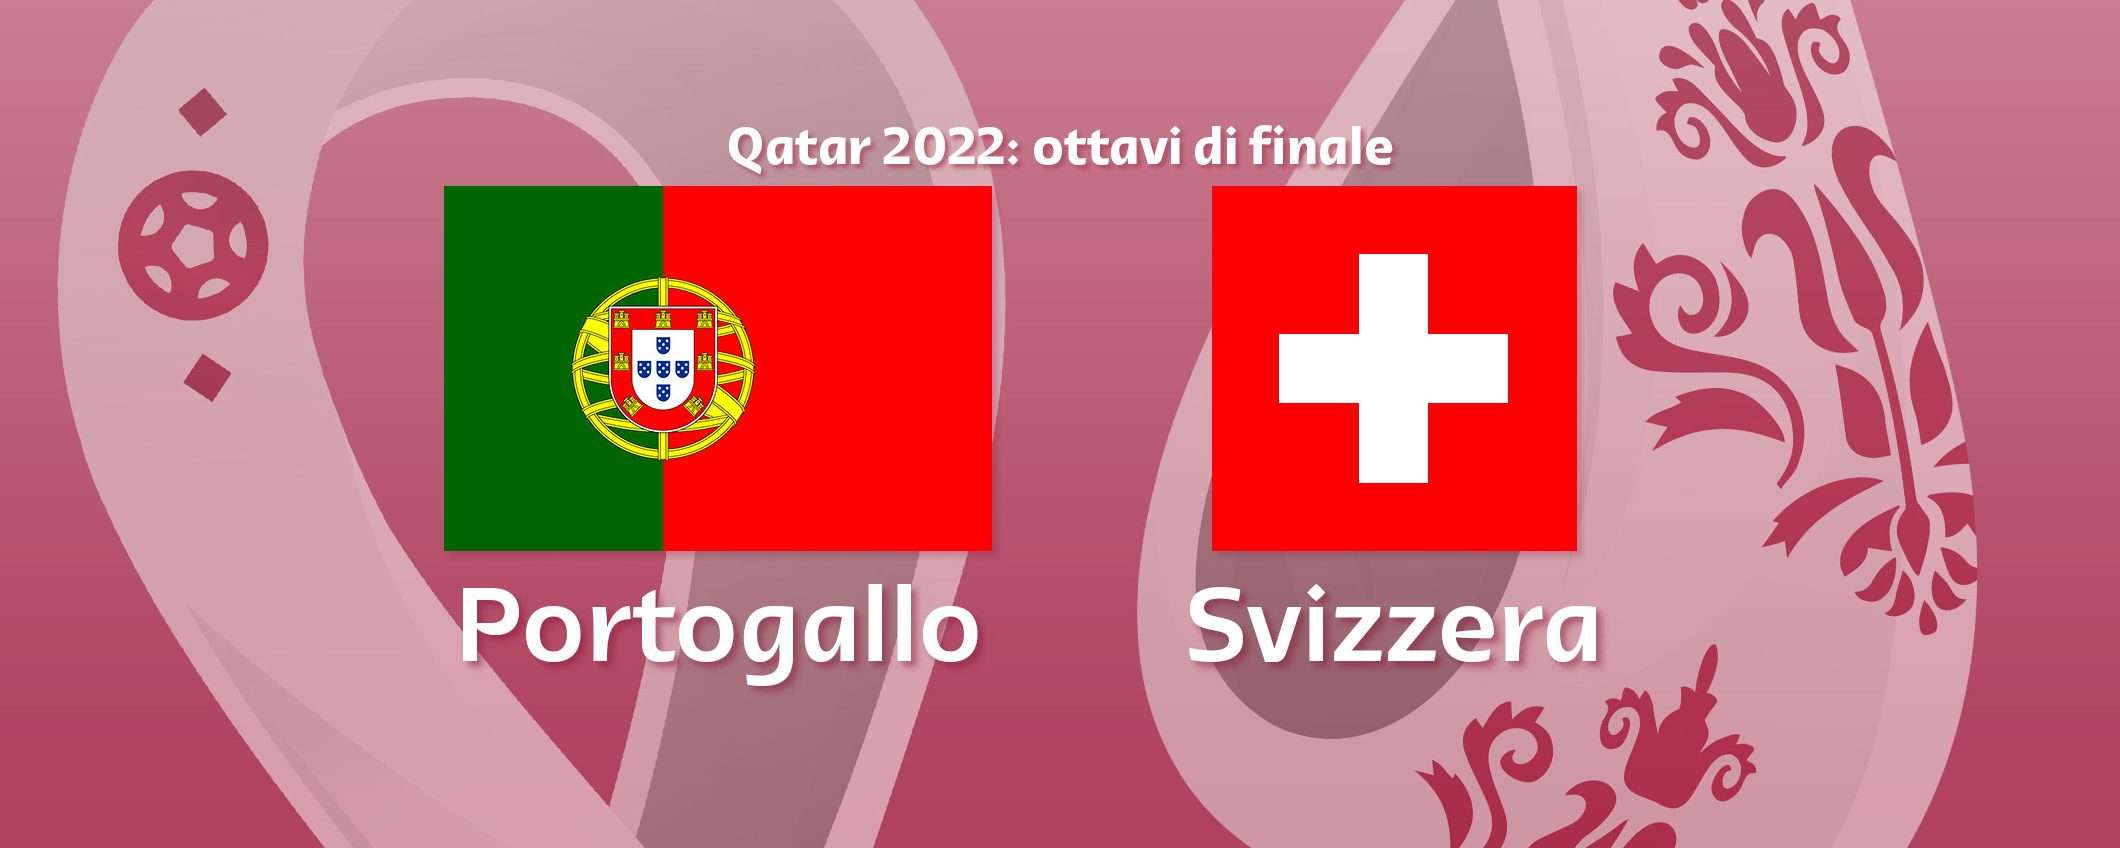 Come vedere Portogallo-Svizzera in streaming